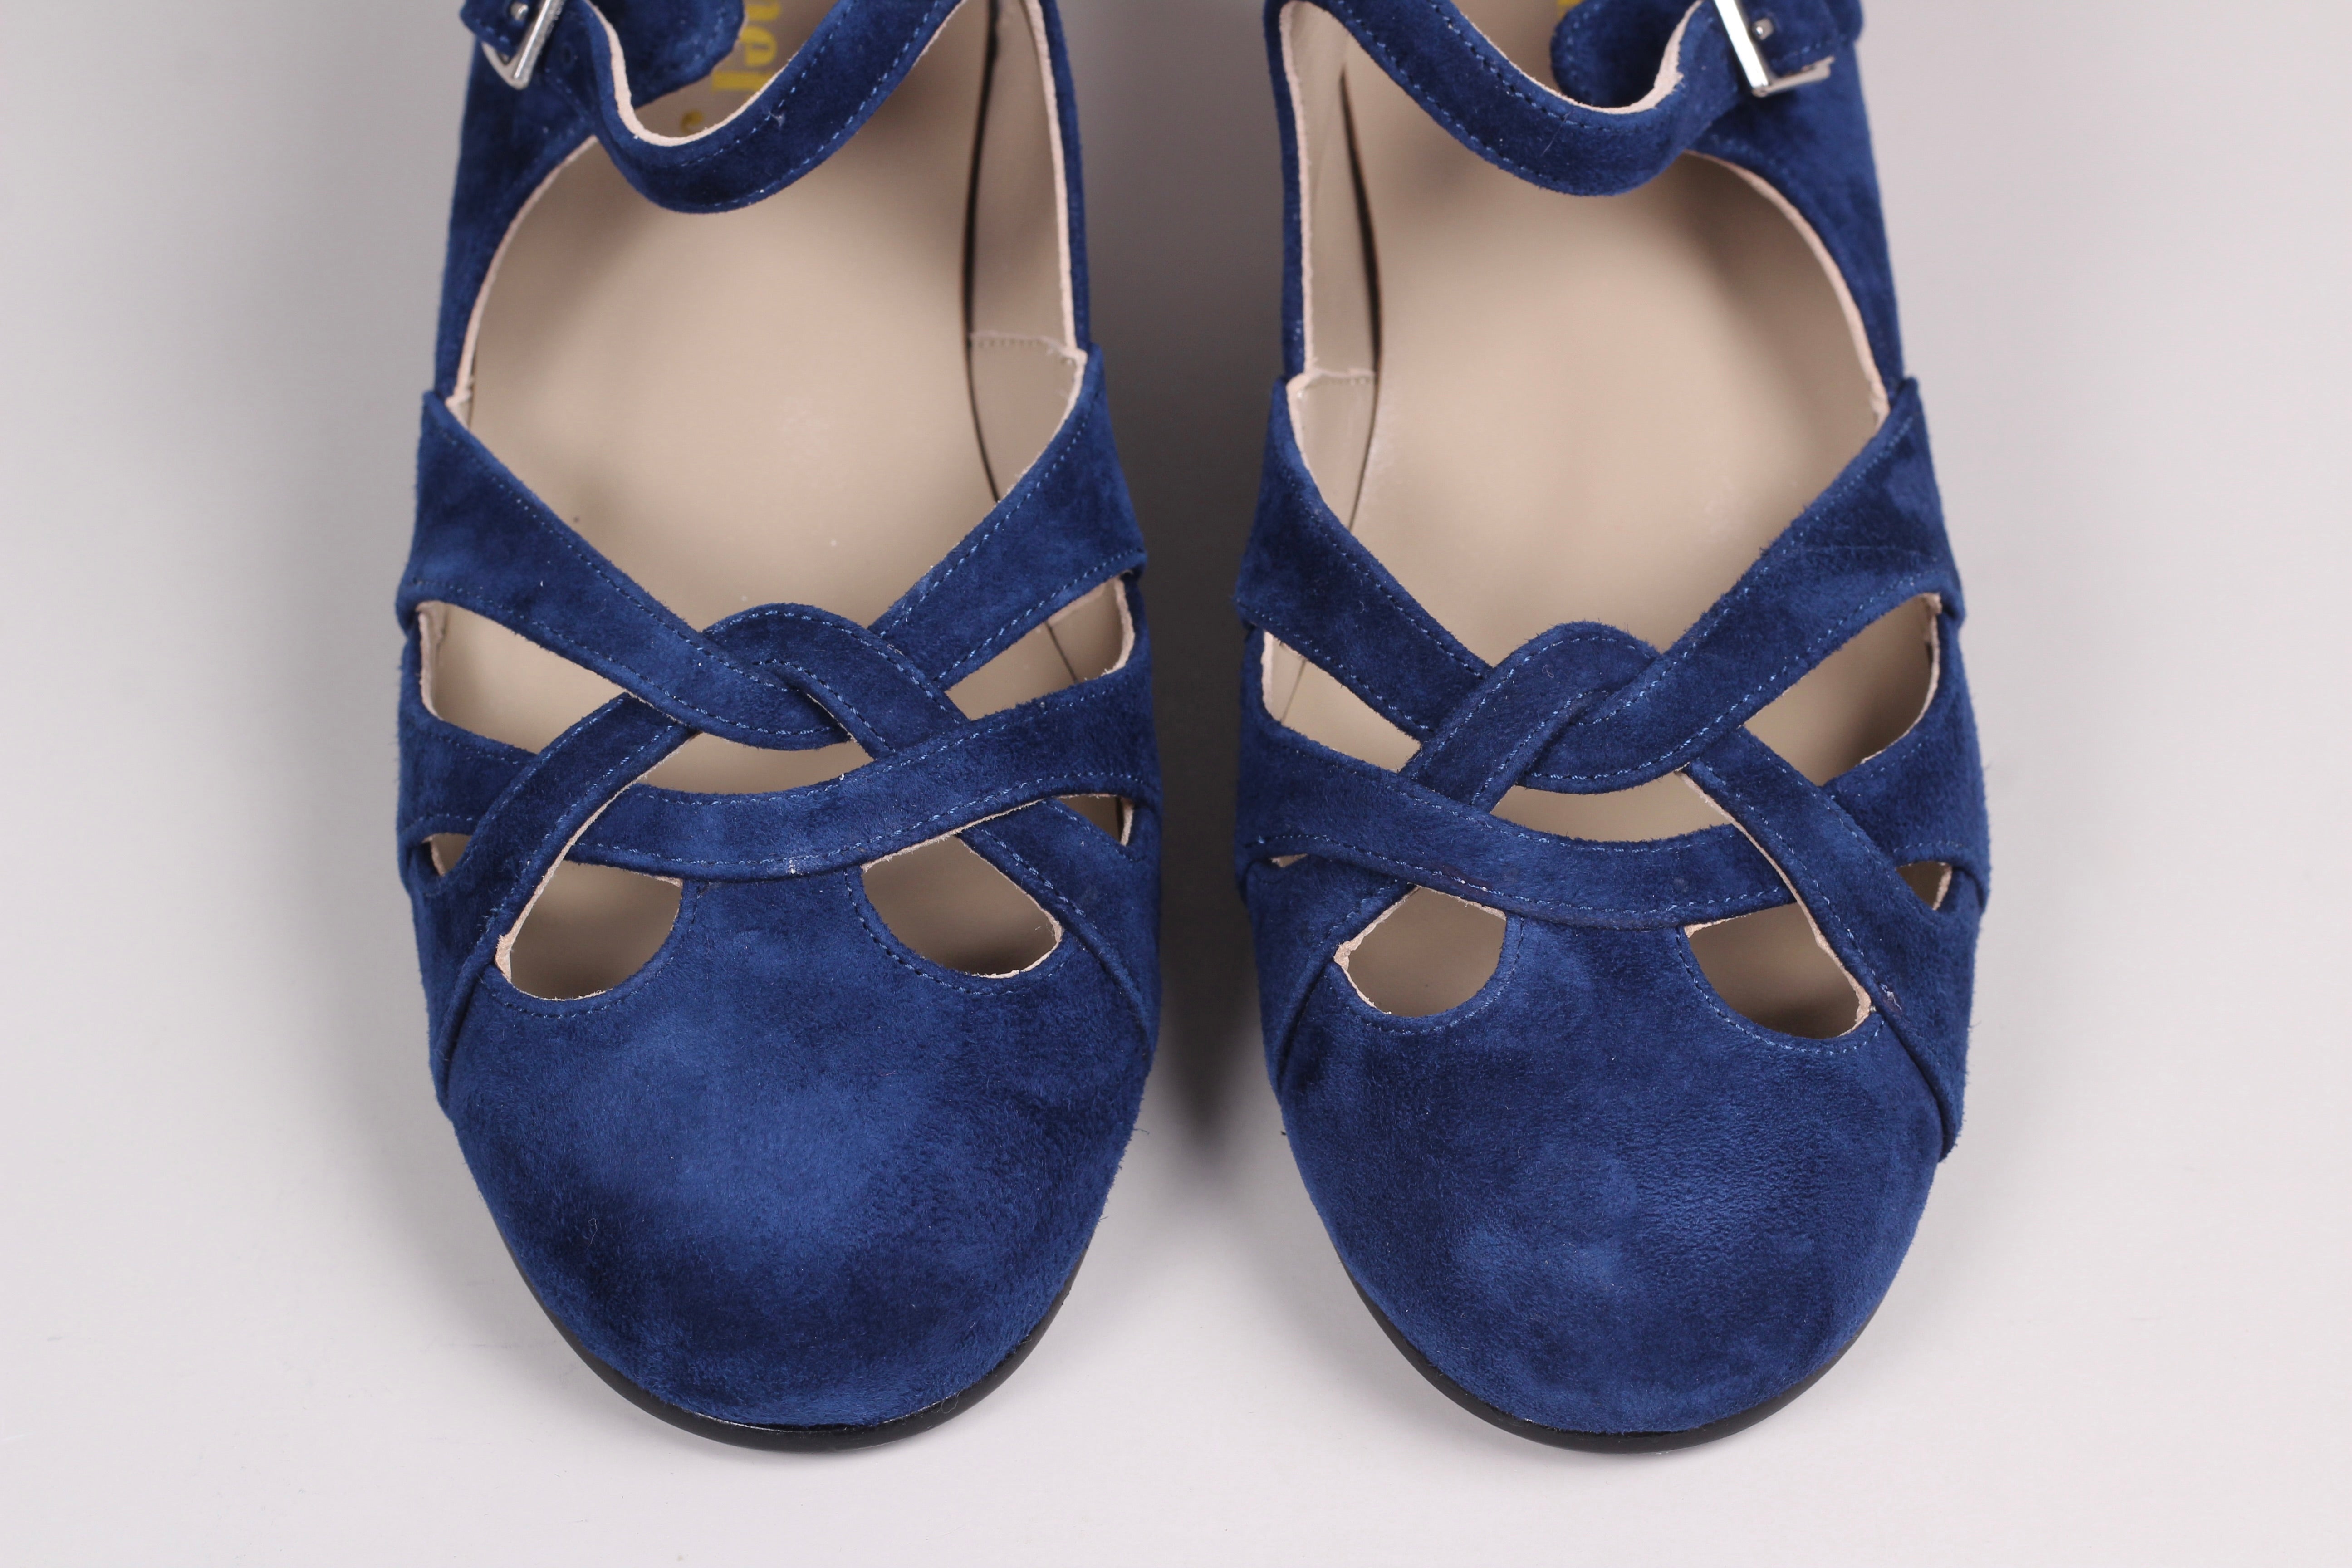 1930'er / 1940'er vintage style sandaler i ruskind, marineblå  - Ida